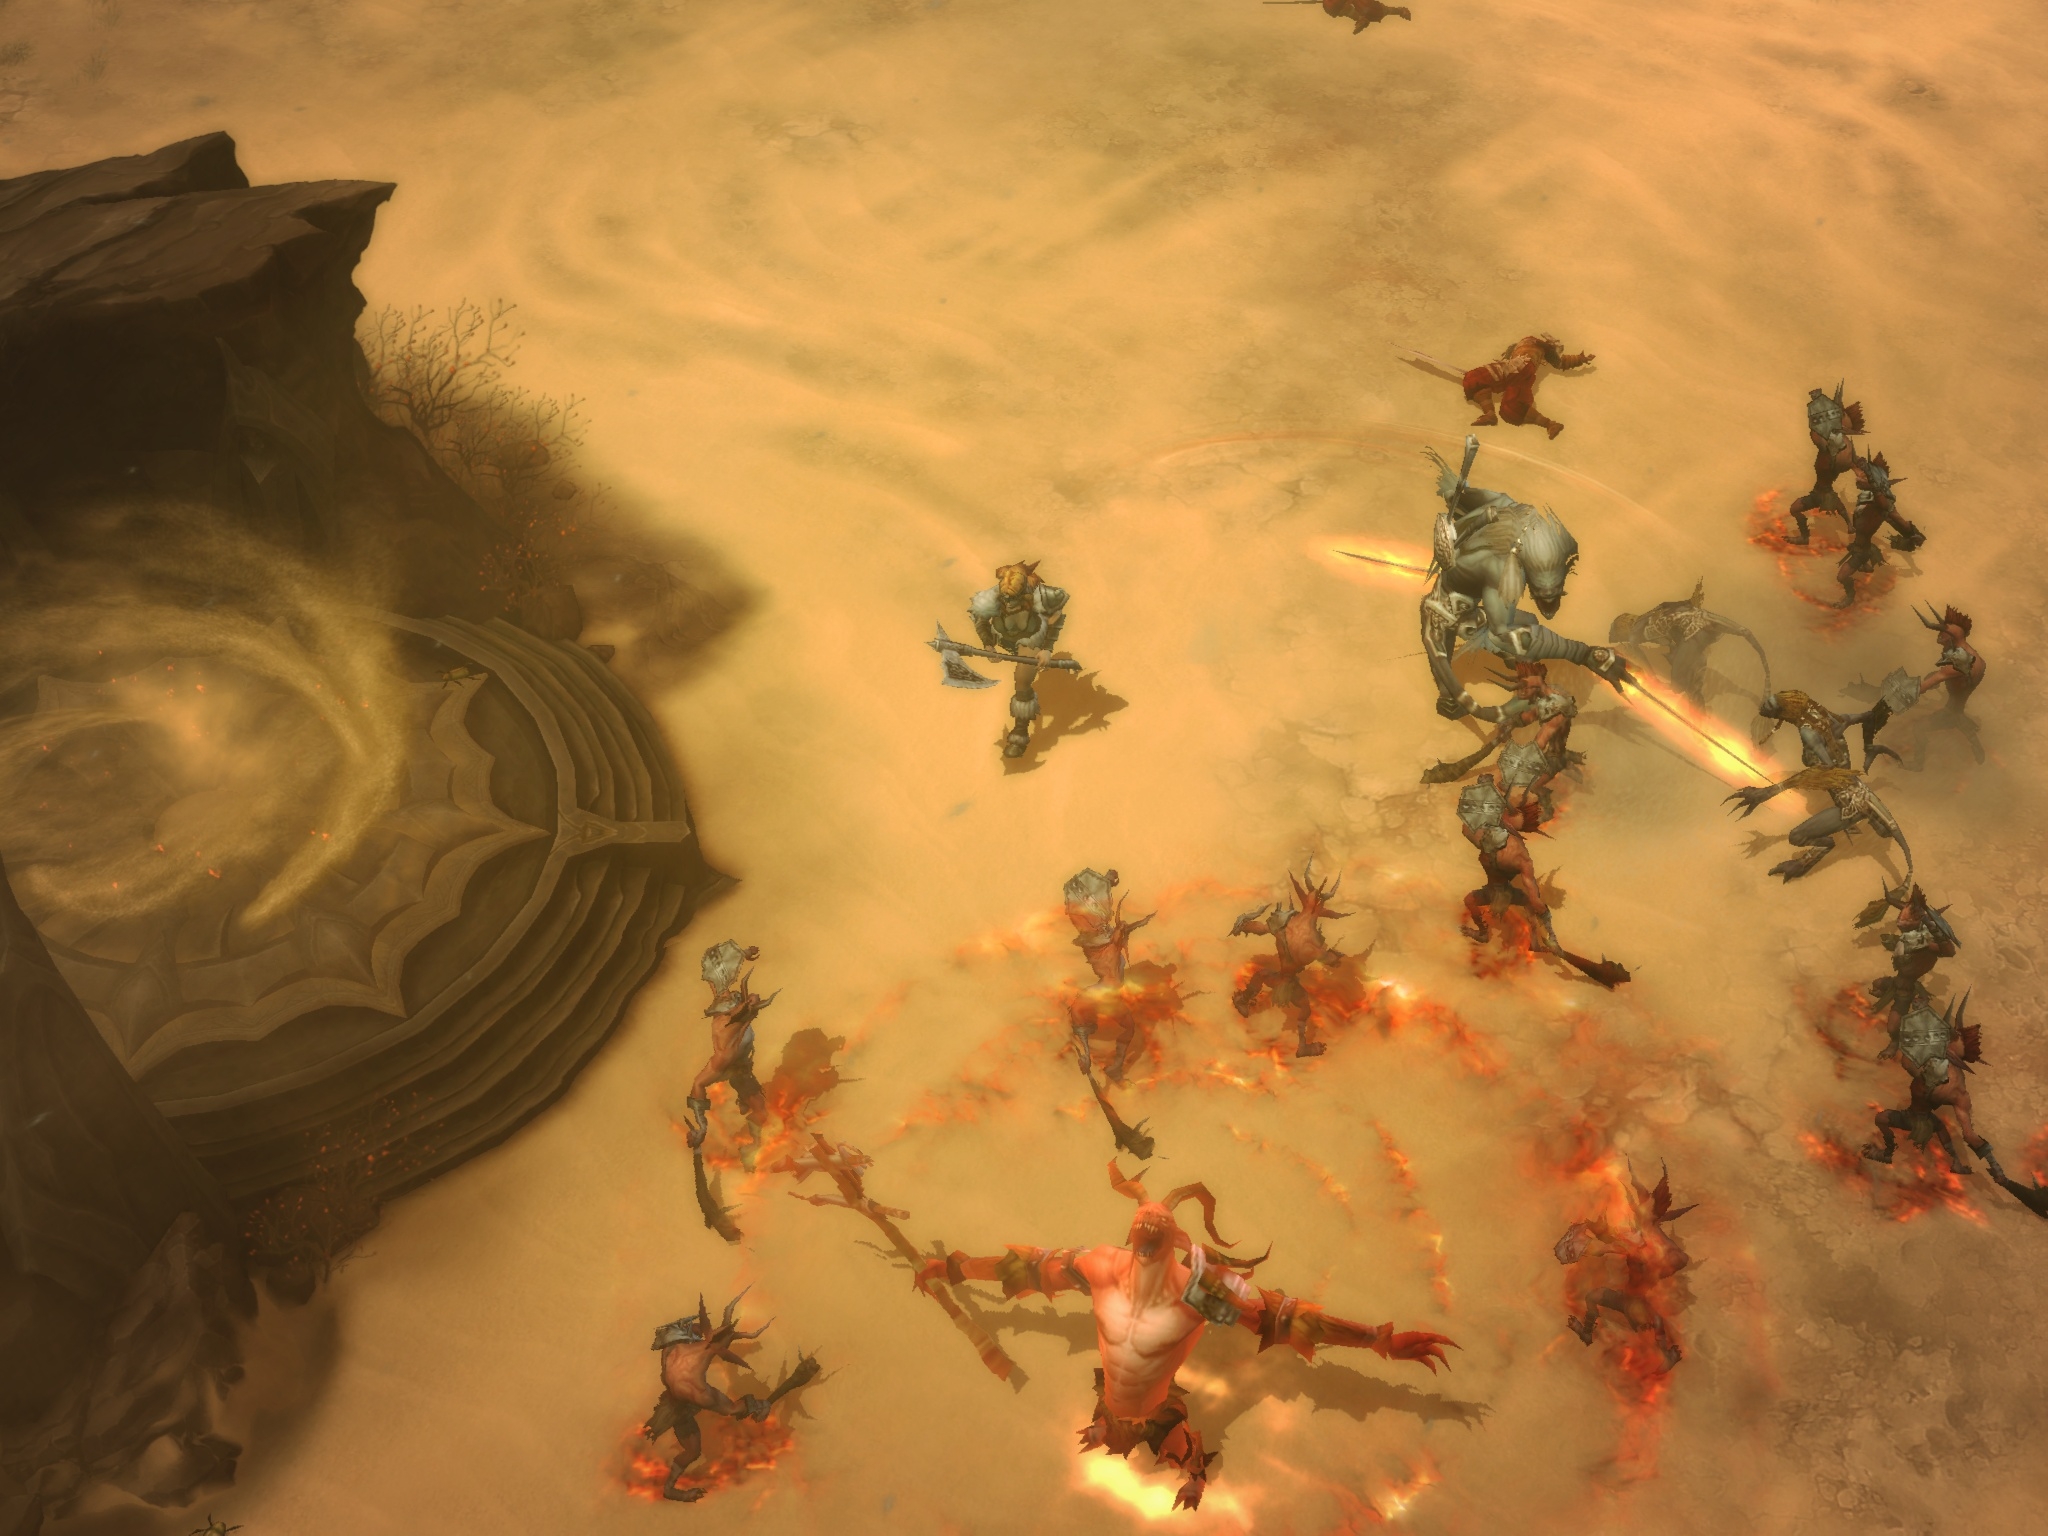 Скриншот из игры Diablo 3 под номером 54